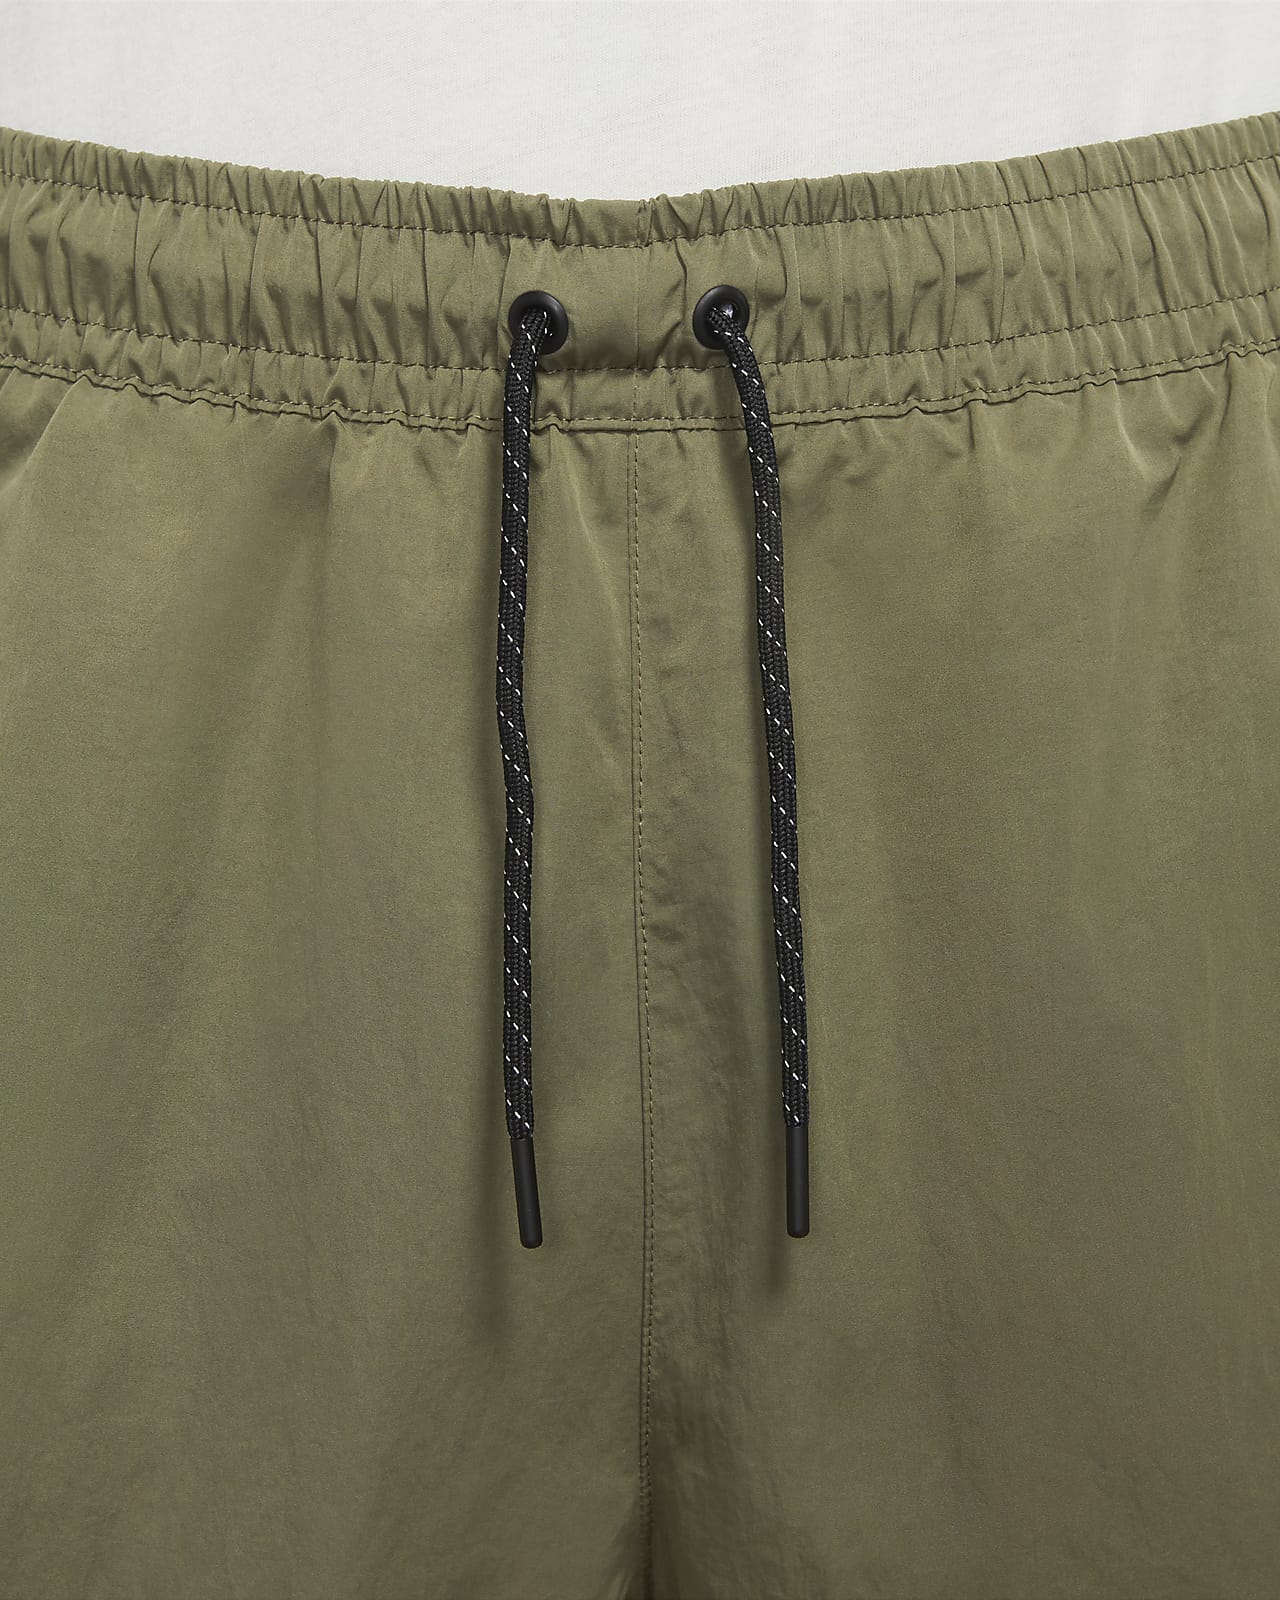 Nike Sportswear Tech Essentials Men's lined Commuter Pants